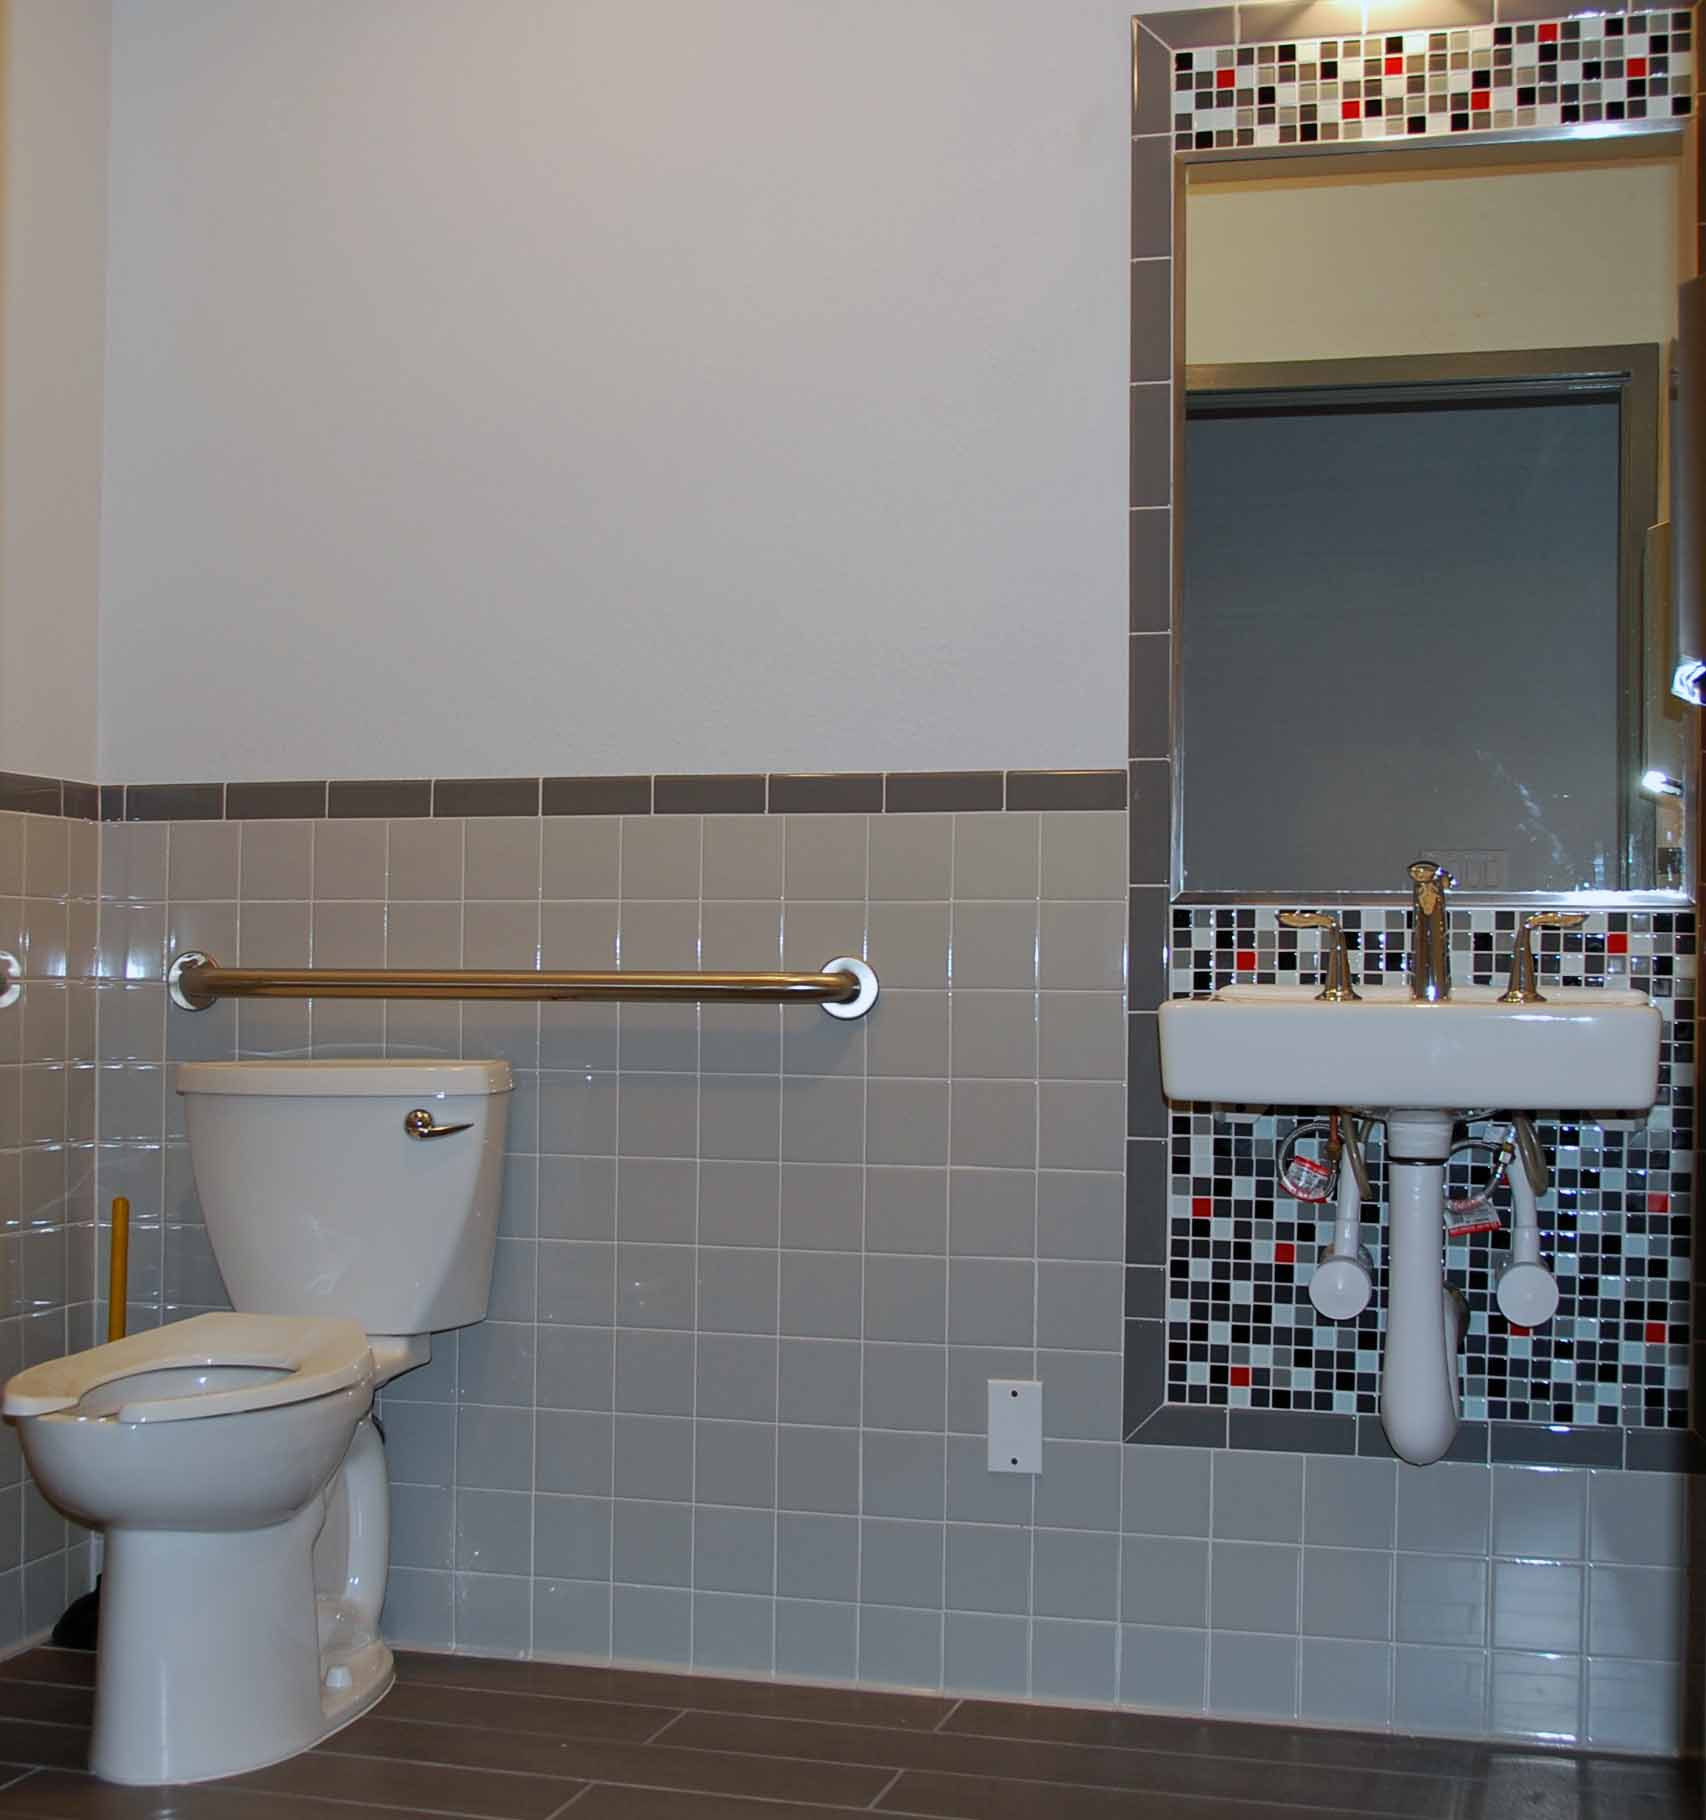 Commercial Bathroom Tile
 Cheap & cheerful tile design for an ADA bathroom – Katz